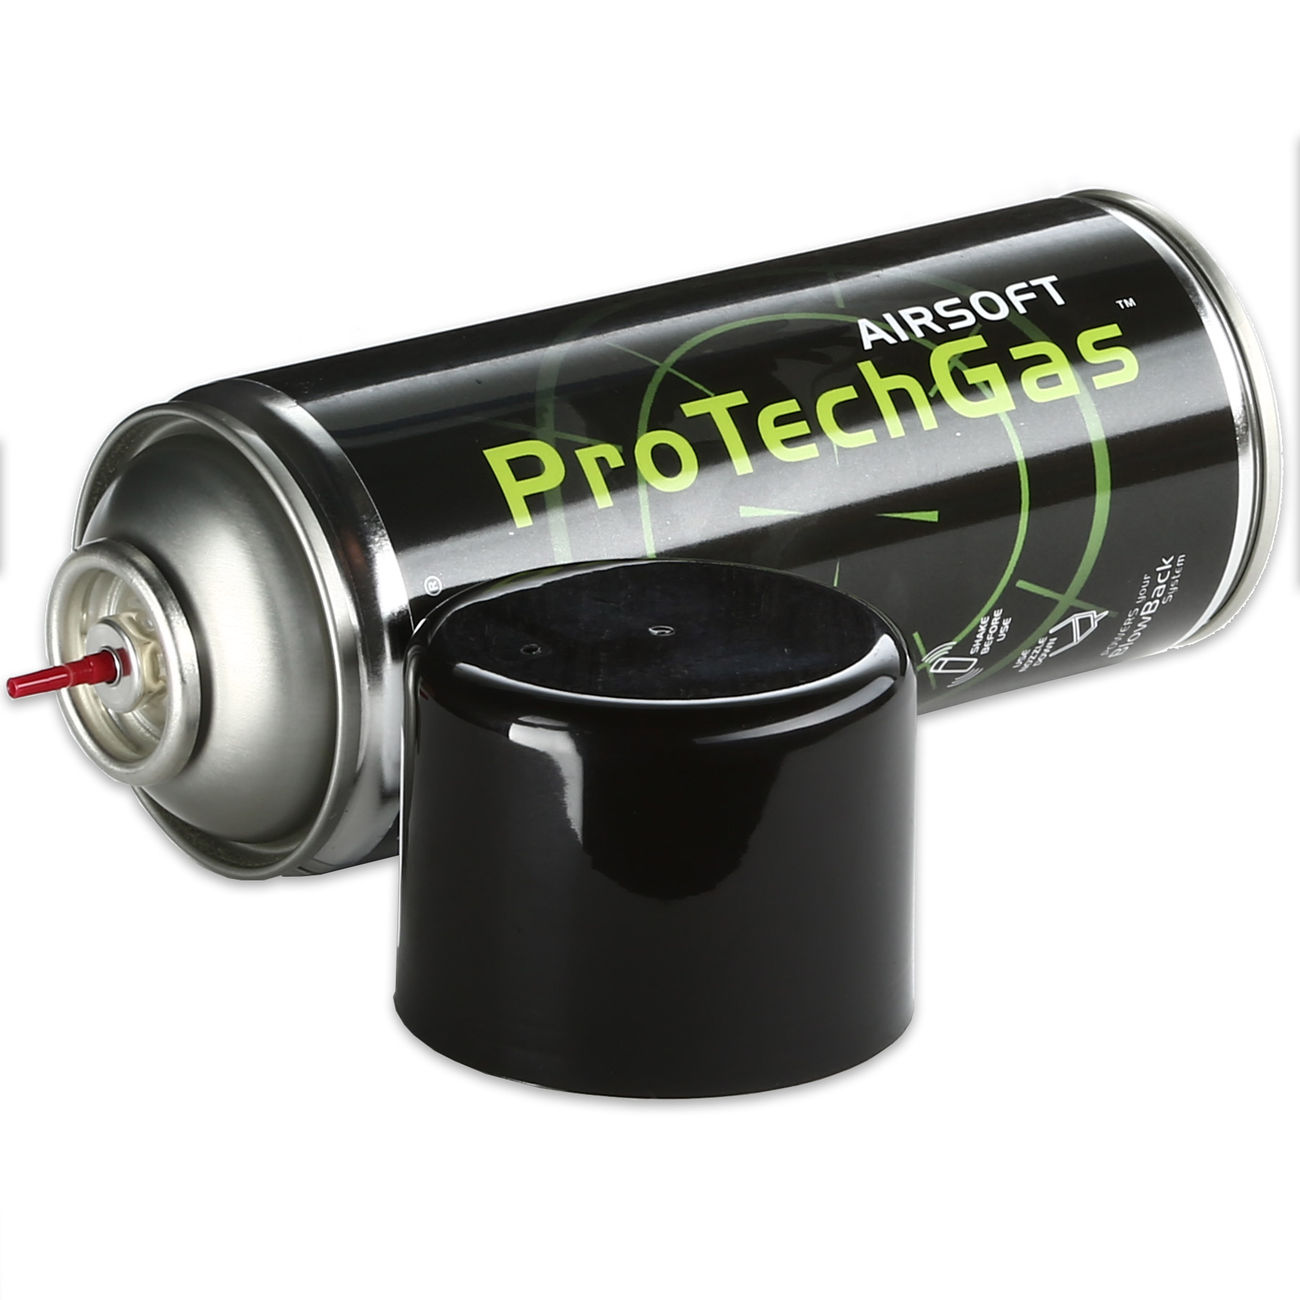 ProTech Guns Airsoft Green Gas 400 ml - New Version Bild 1